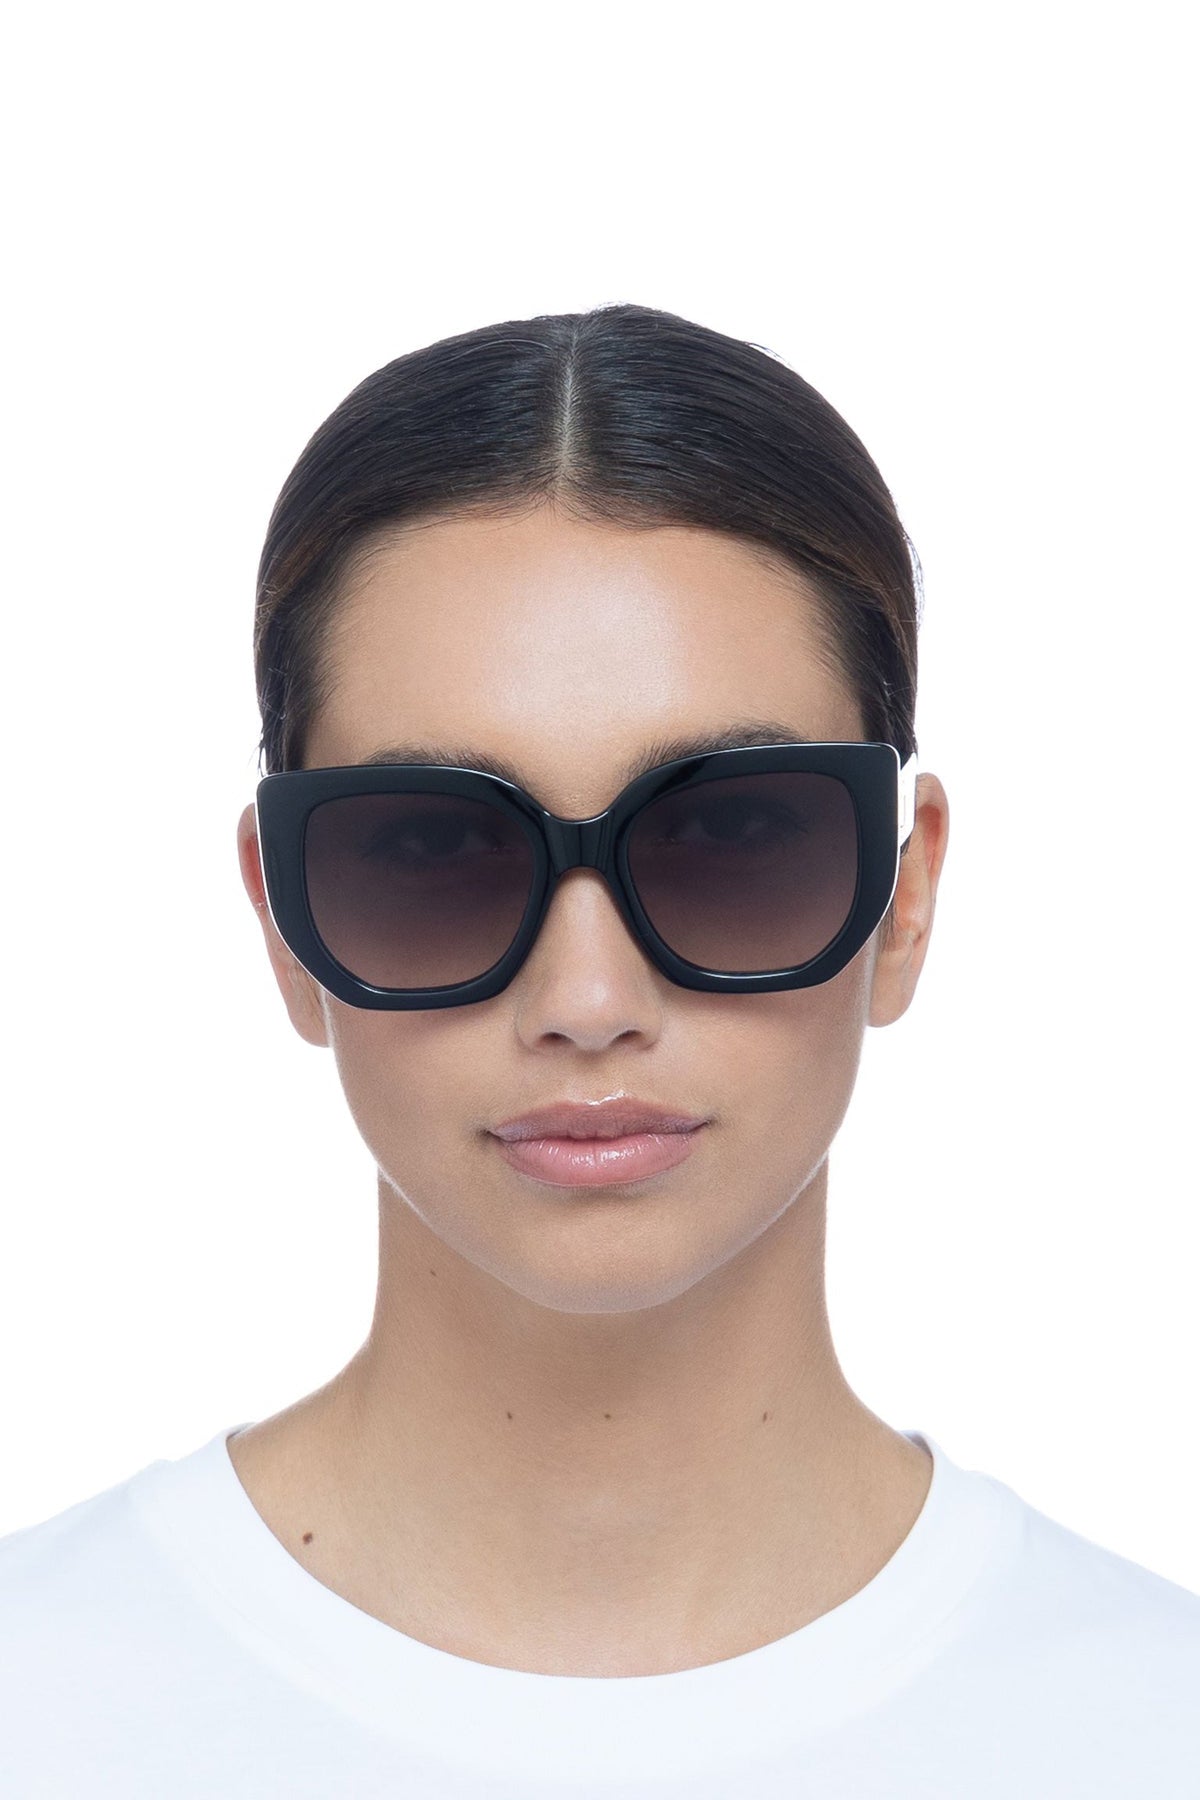 Le Specs Euphoria Sunglasses - Black - RUM Amsterdam